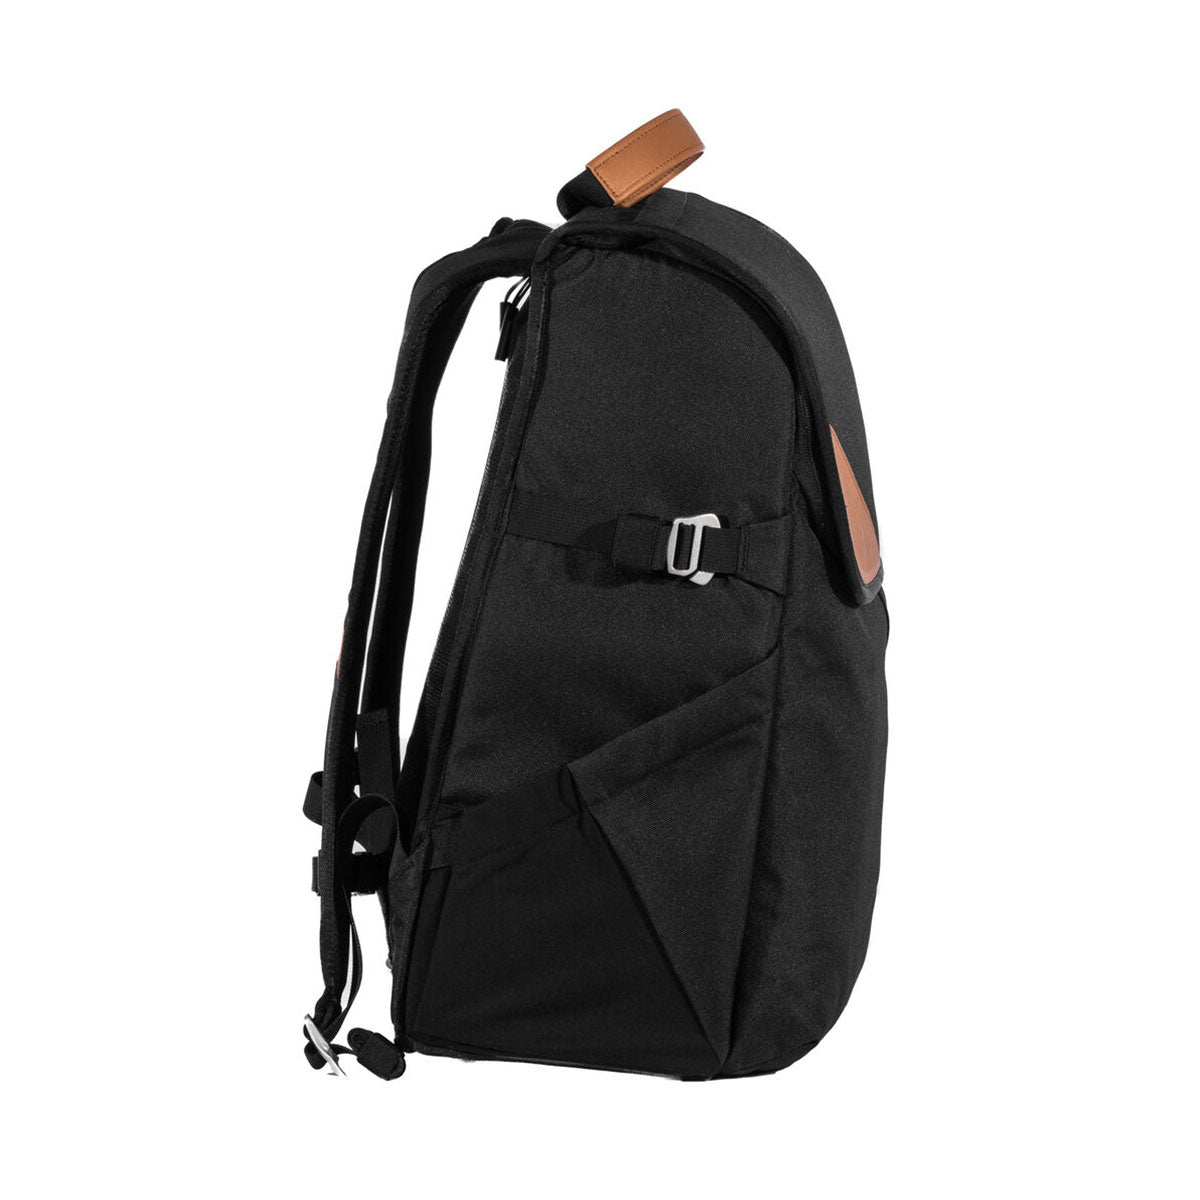 Holdland Original Backpack (Black, 28L)